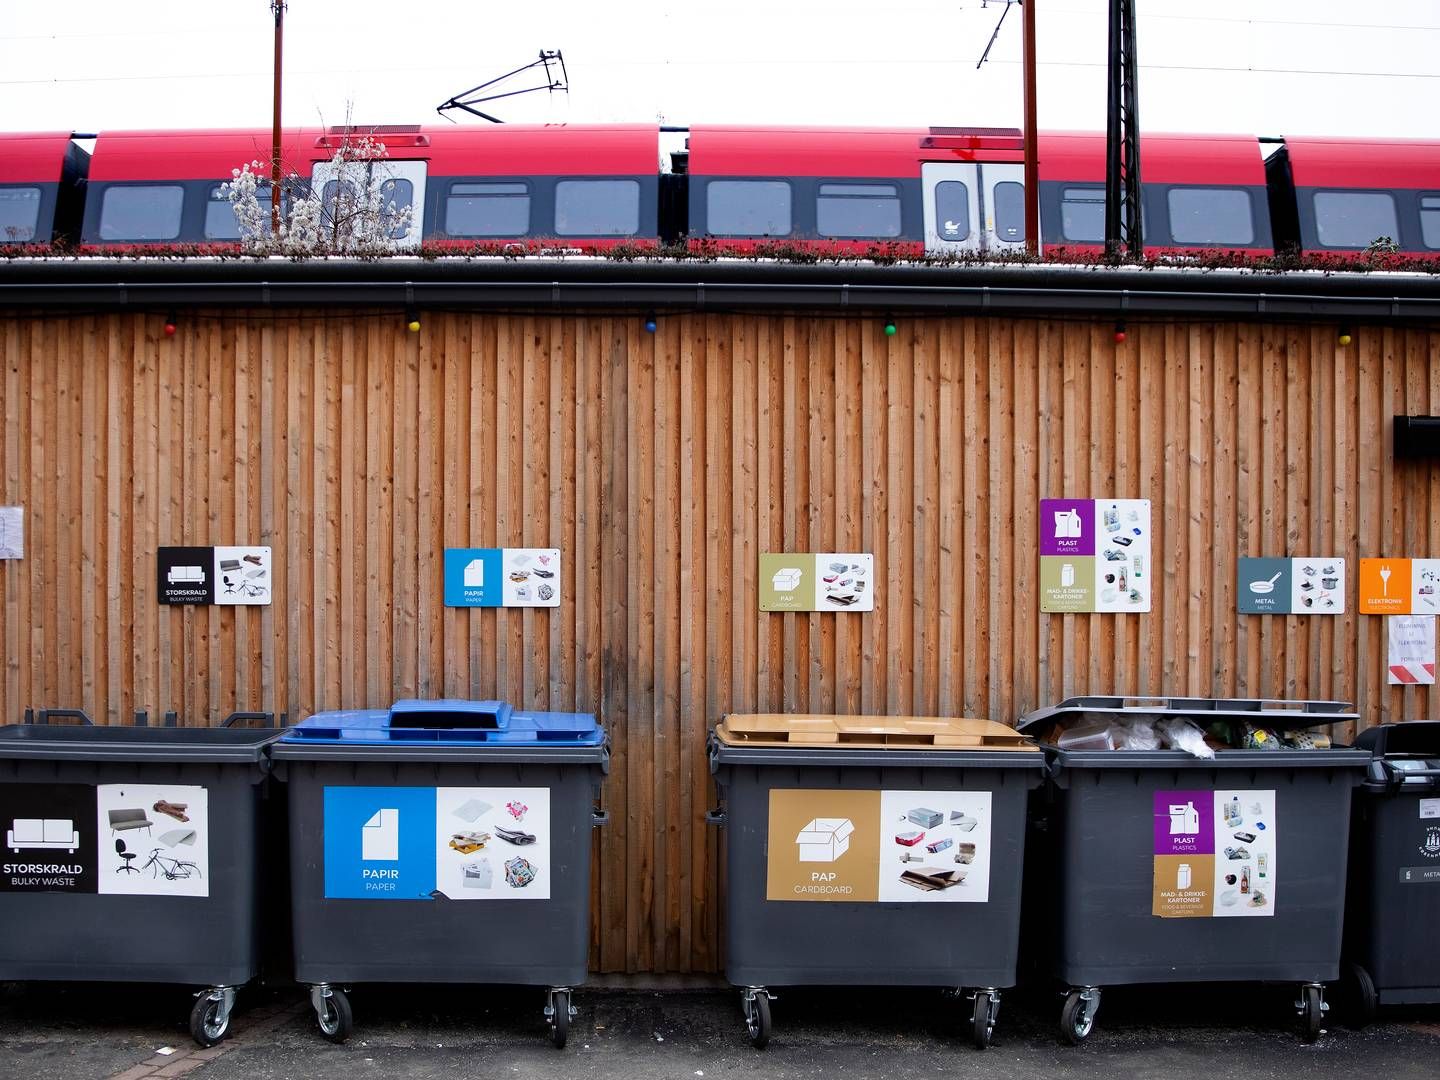 Ifølge Affaldsbekendtgørelsen skal affald sorteres i ti fraktioner, hvilket landets kommuner er ved at omstille sig til. | Foto: Finn Frandsen